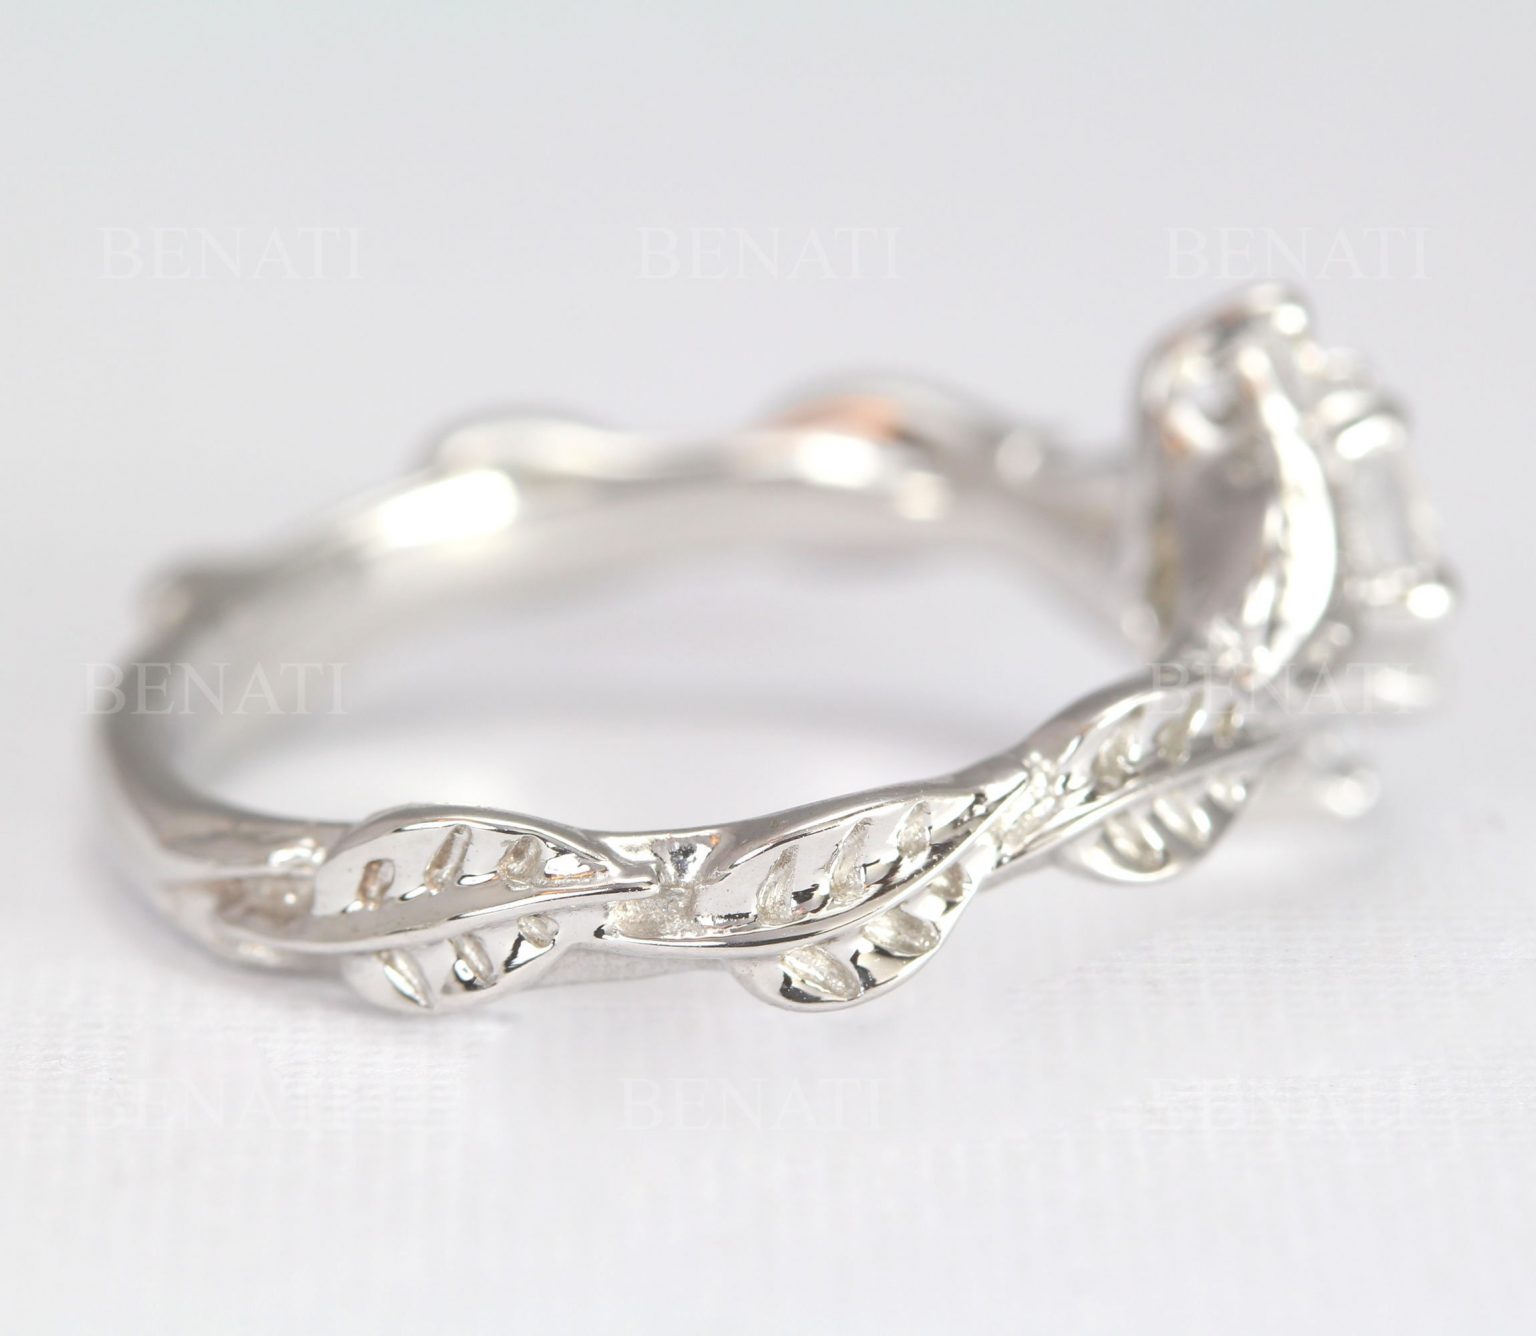 Moonstone Engagement Ring, Rose Gold Engagement Ring | Benati